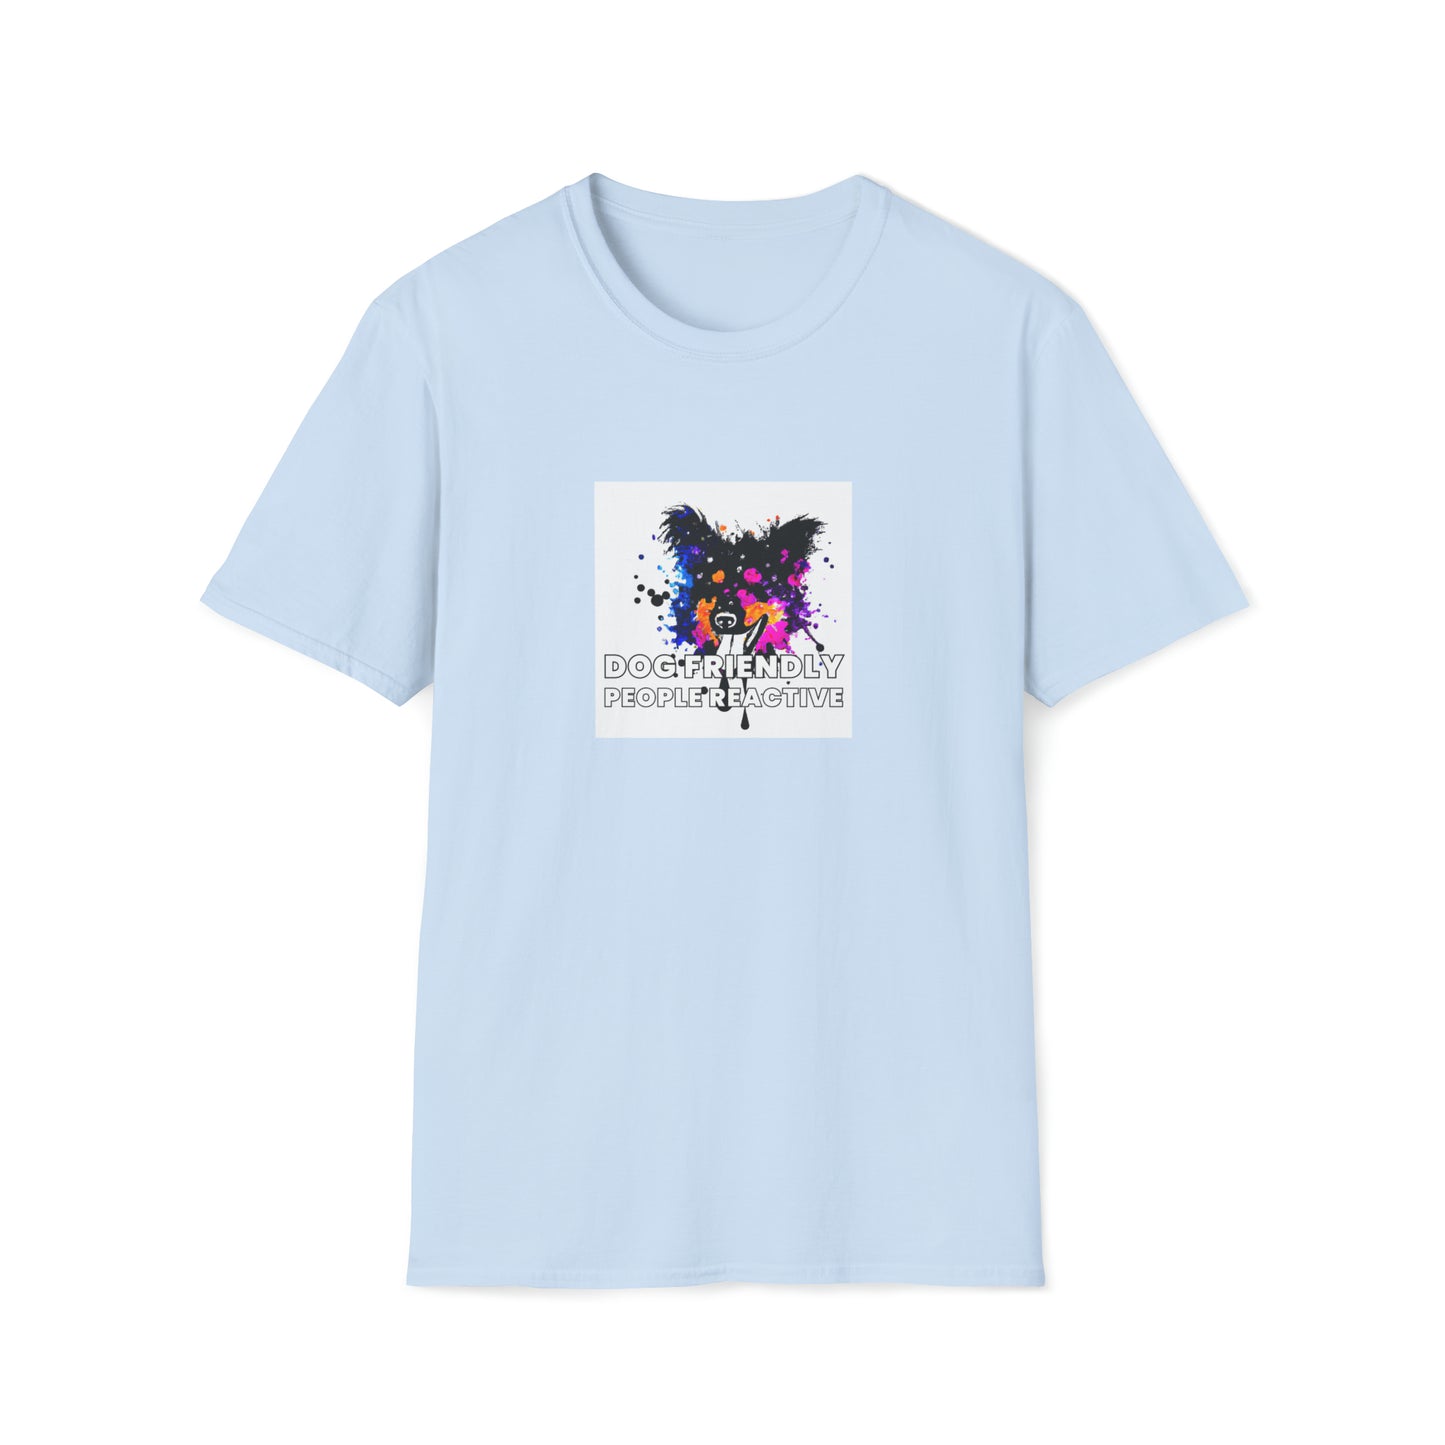 Murjeaux Streetwear - "Dog Friendly, People Reactive" (colored swirl) Unisex Tee